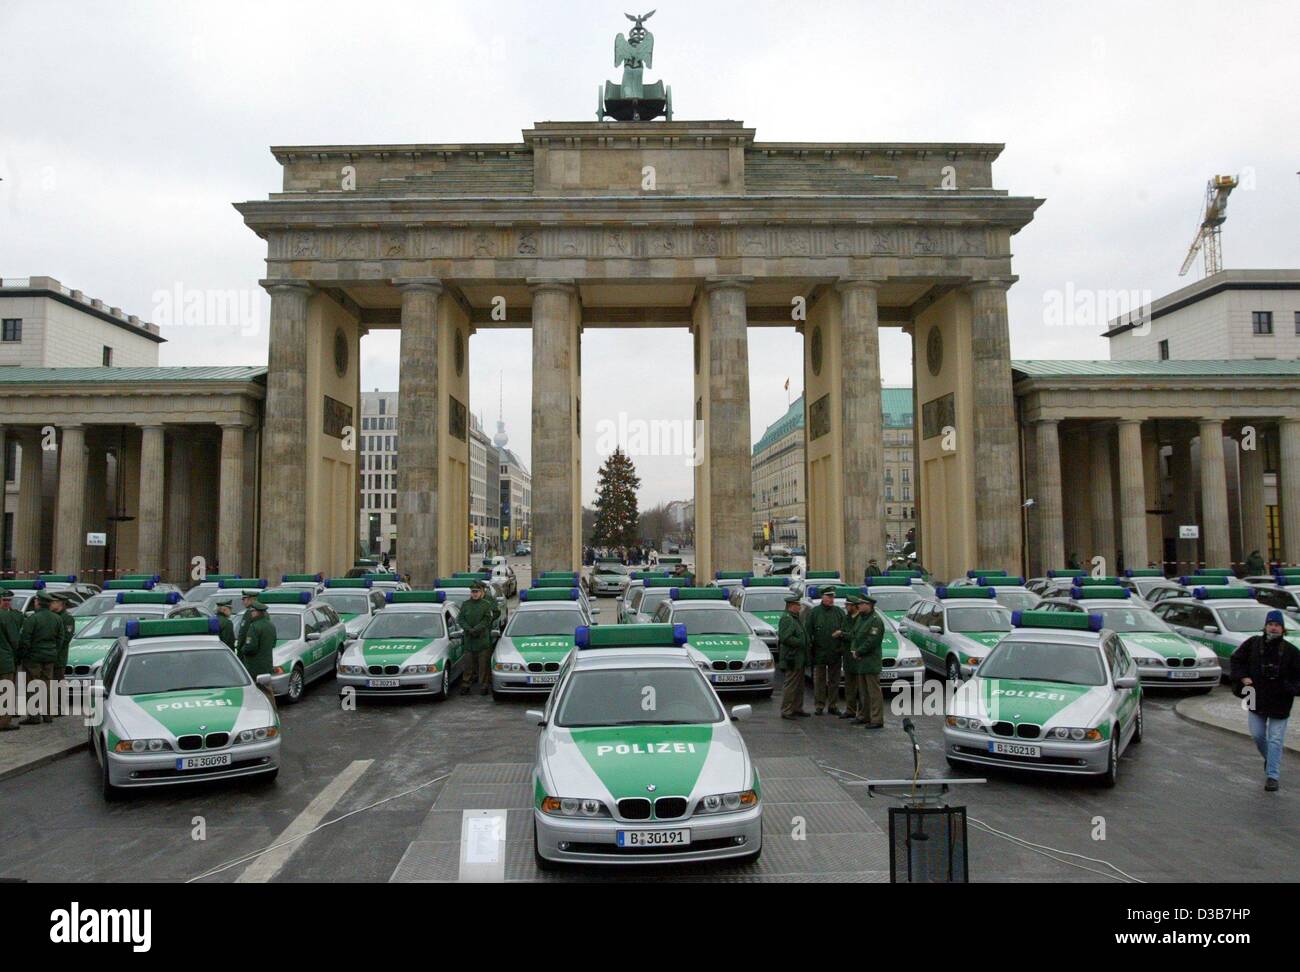 (Dpa) - BMW di Berlino della polizia di stare davanti alla Porta di Brandeburgo a Berlino, 18 dicembre 2002. La 100 nuove auto della polizia sono state consegnate a Berlino la polizia della prima. La Bmw con diesel-motori sono stati affittati per due anni e che vanno ad arricchire il materiale rotabile. Considerando che le forze di polizia in altri c Foto Stock